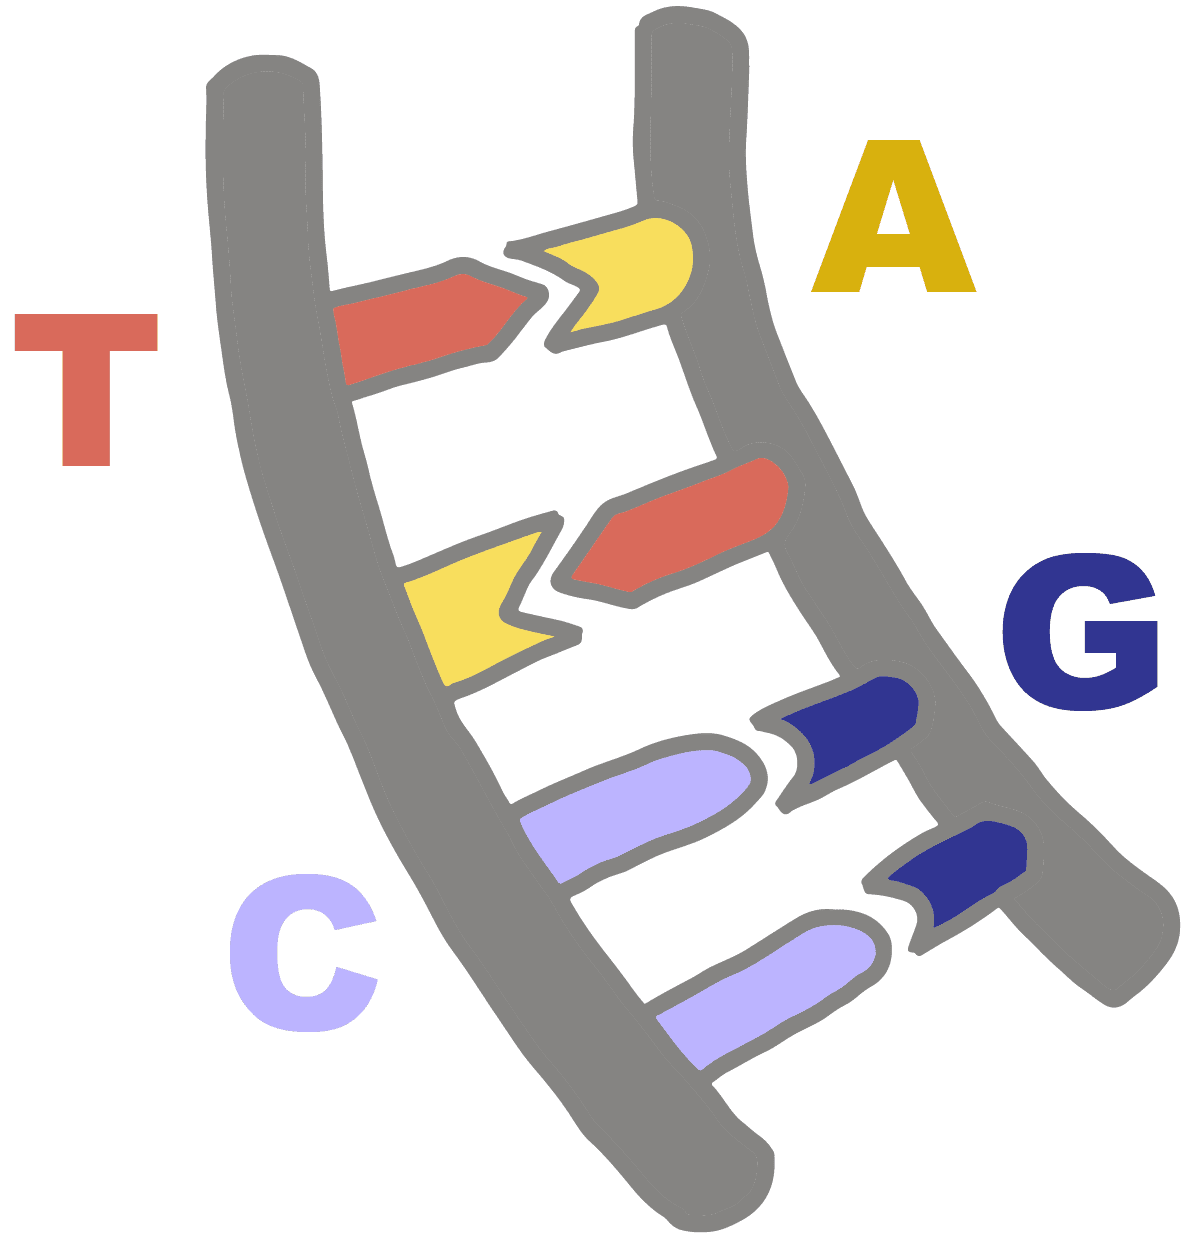 Imagen de pares de bases de ADN con su base complementaria, pares de bases de adenina con timina y pares de bases de guanina con citosina